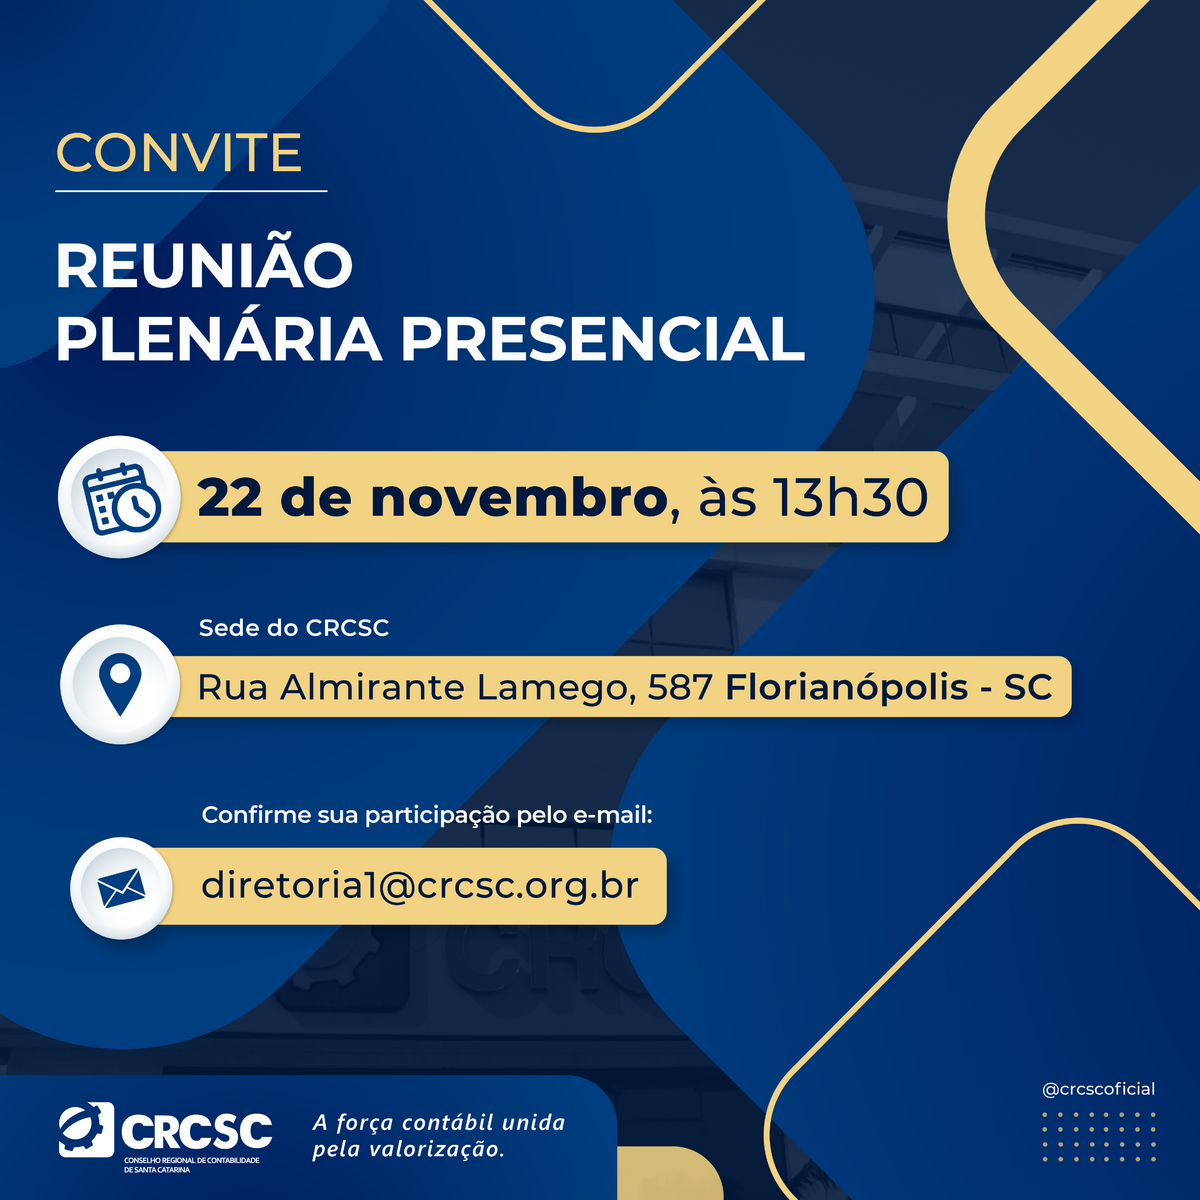 Reunião Plenária do CRCSC será presencial, no dia 22 de novembro